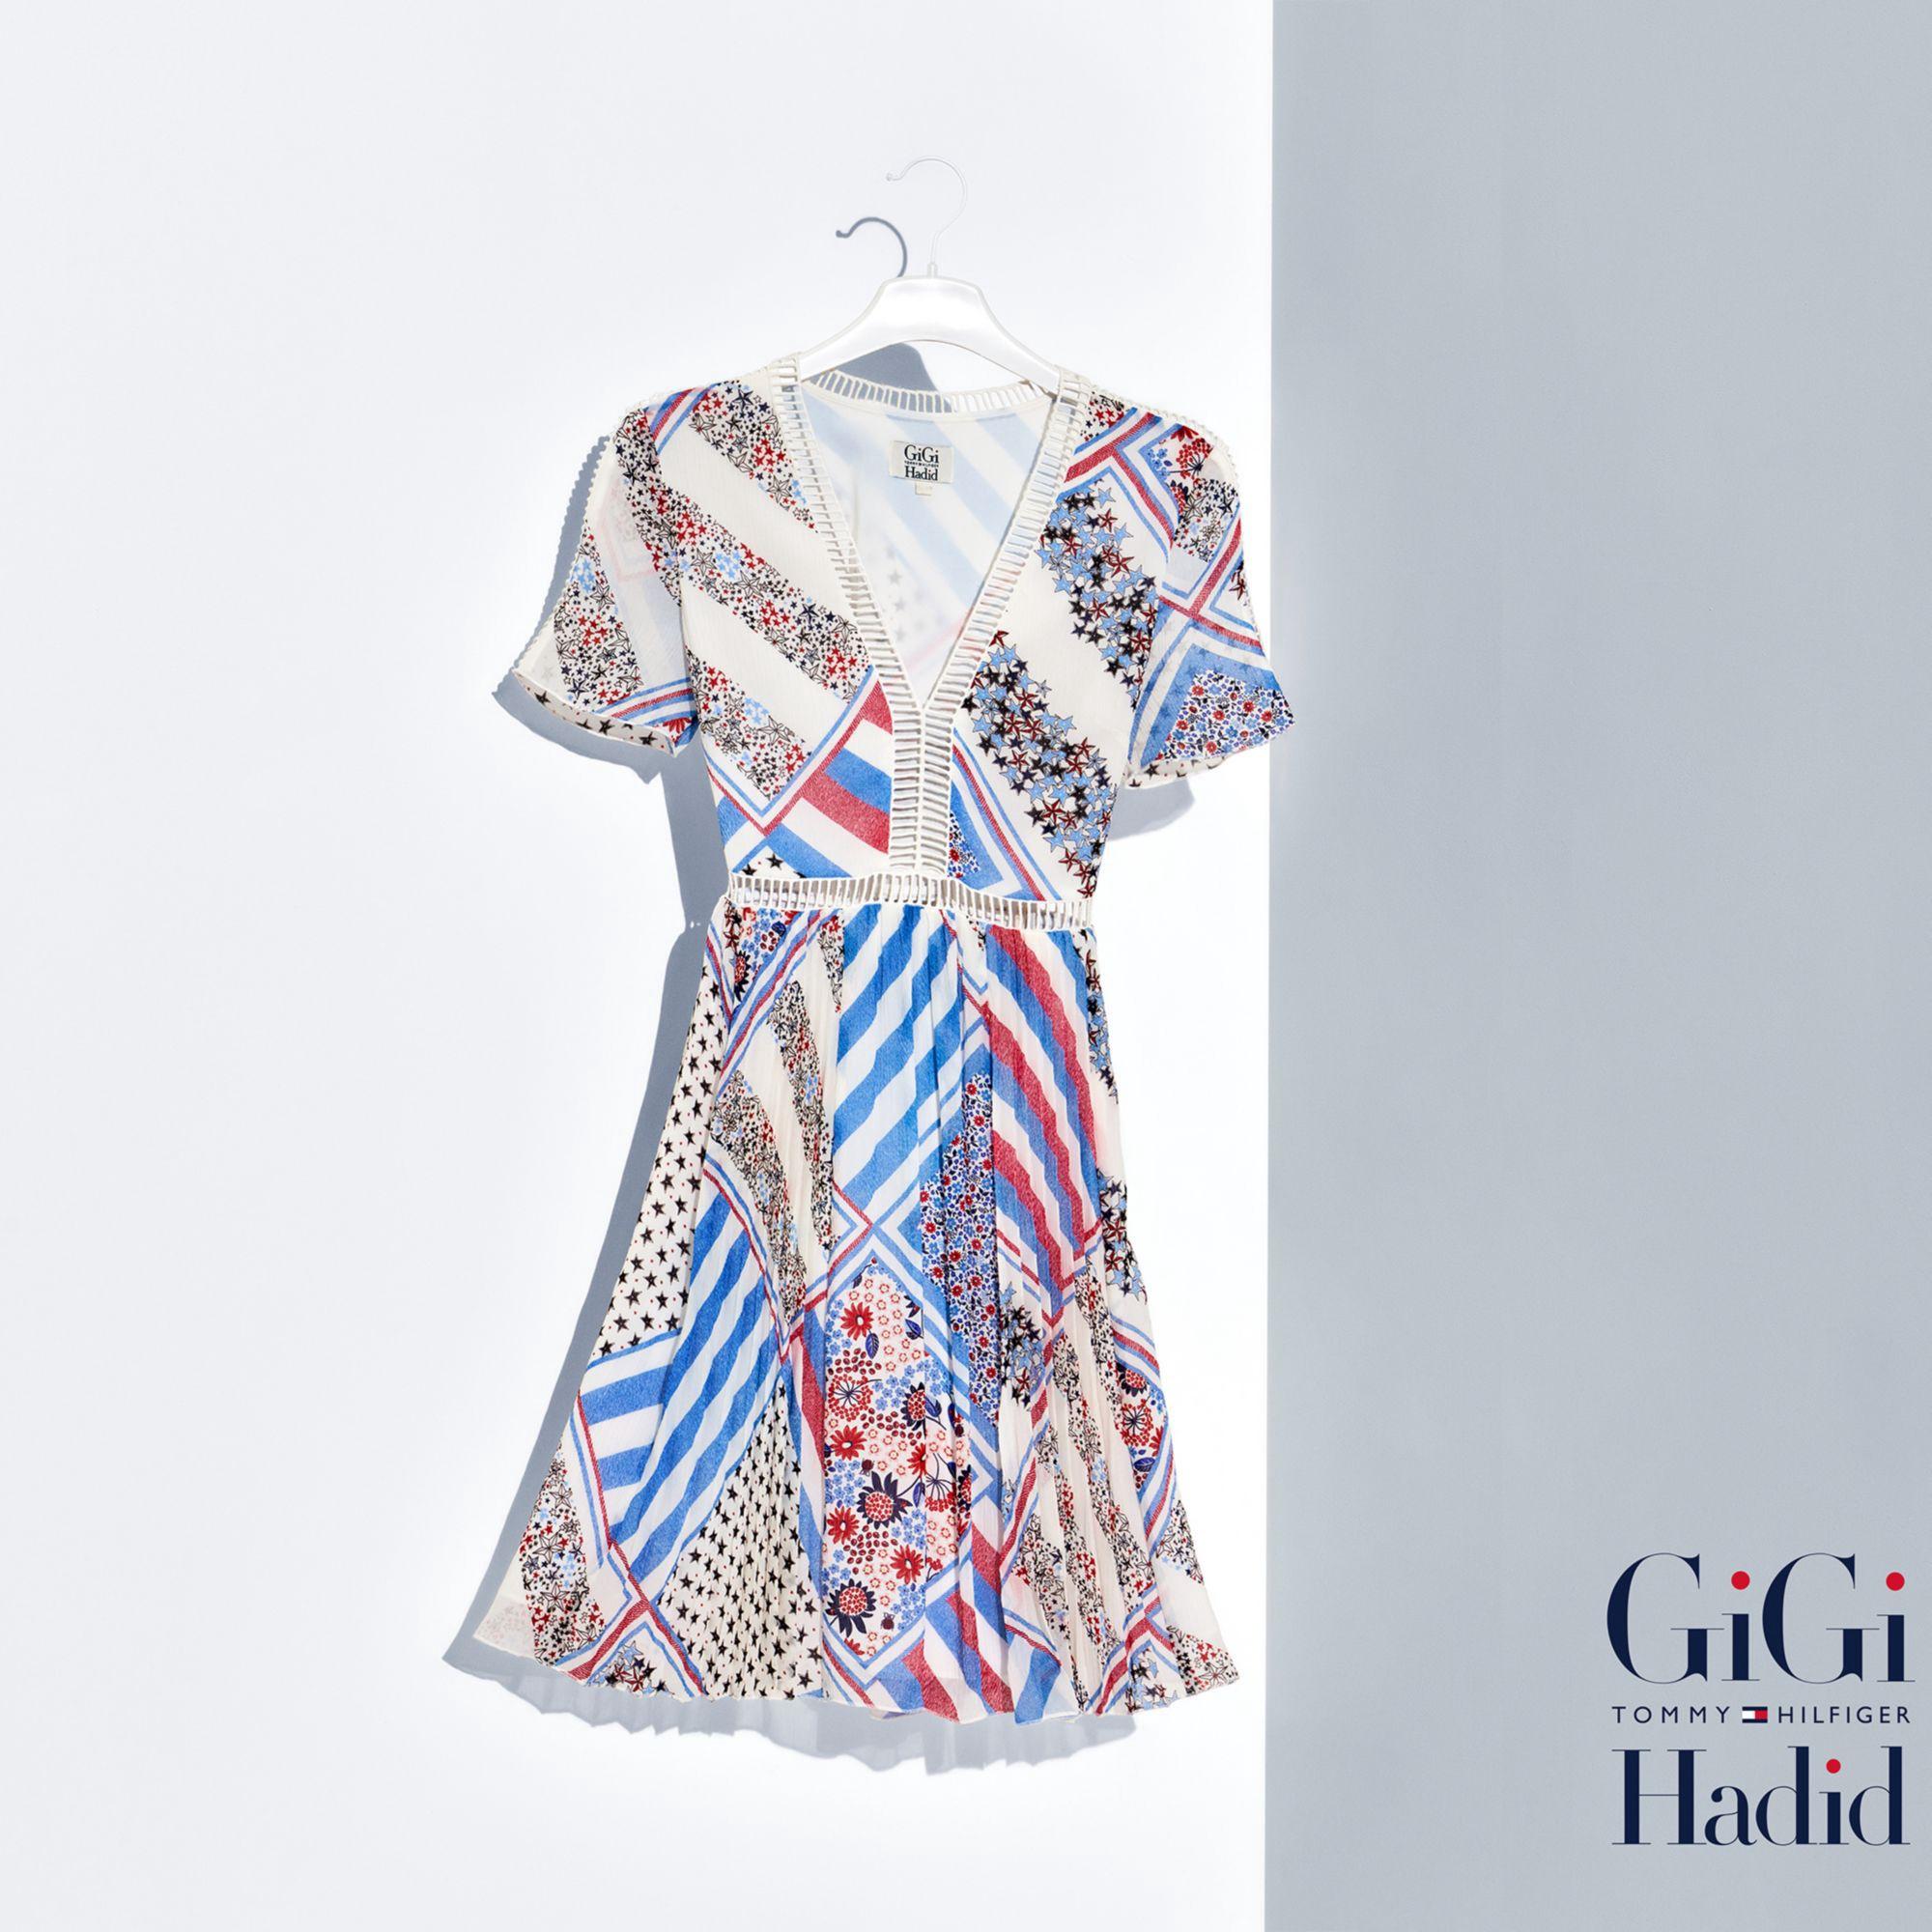 Gigi Hadid Dress Tommy Hilfiger Flash Sales, 59% OFF | www.accede-web.com